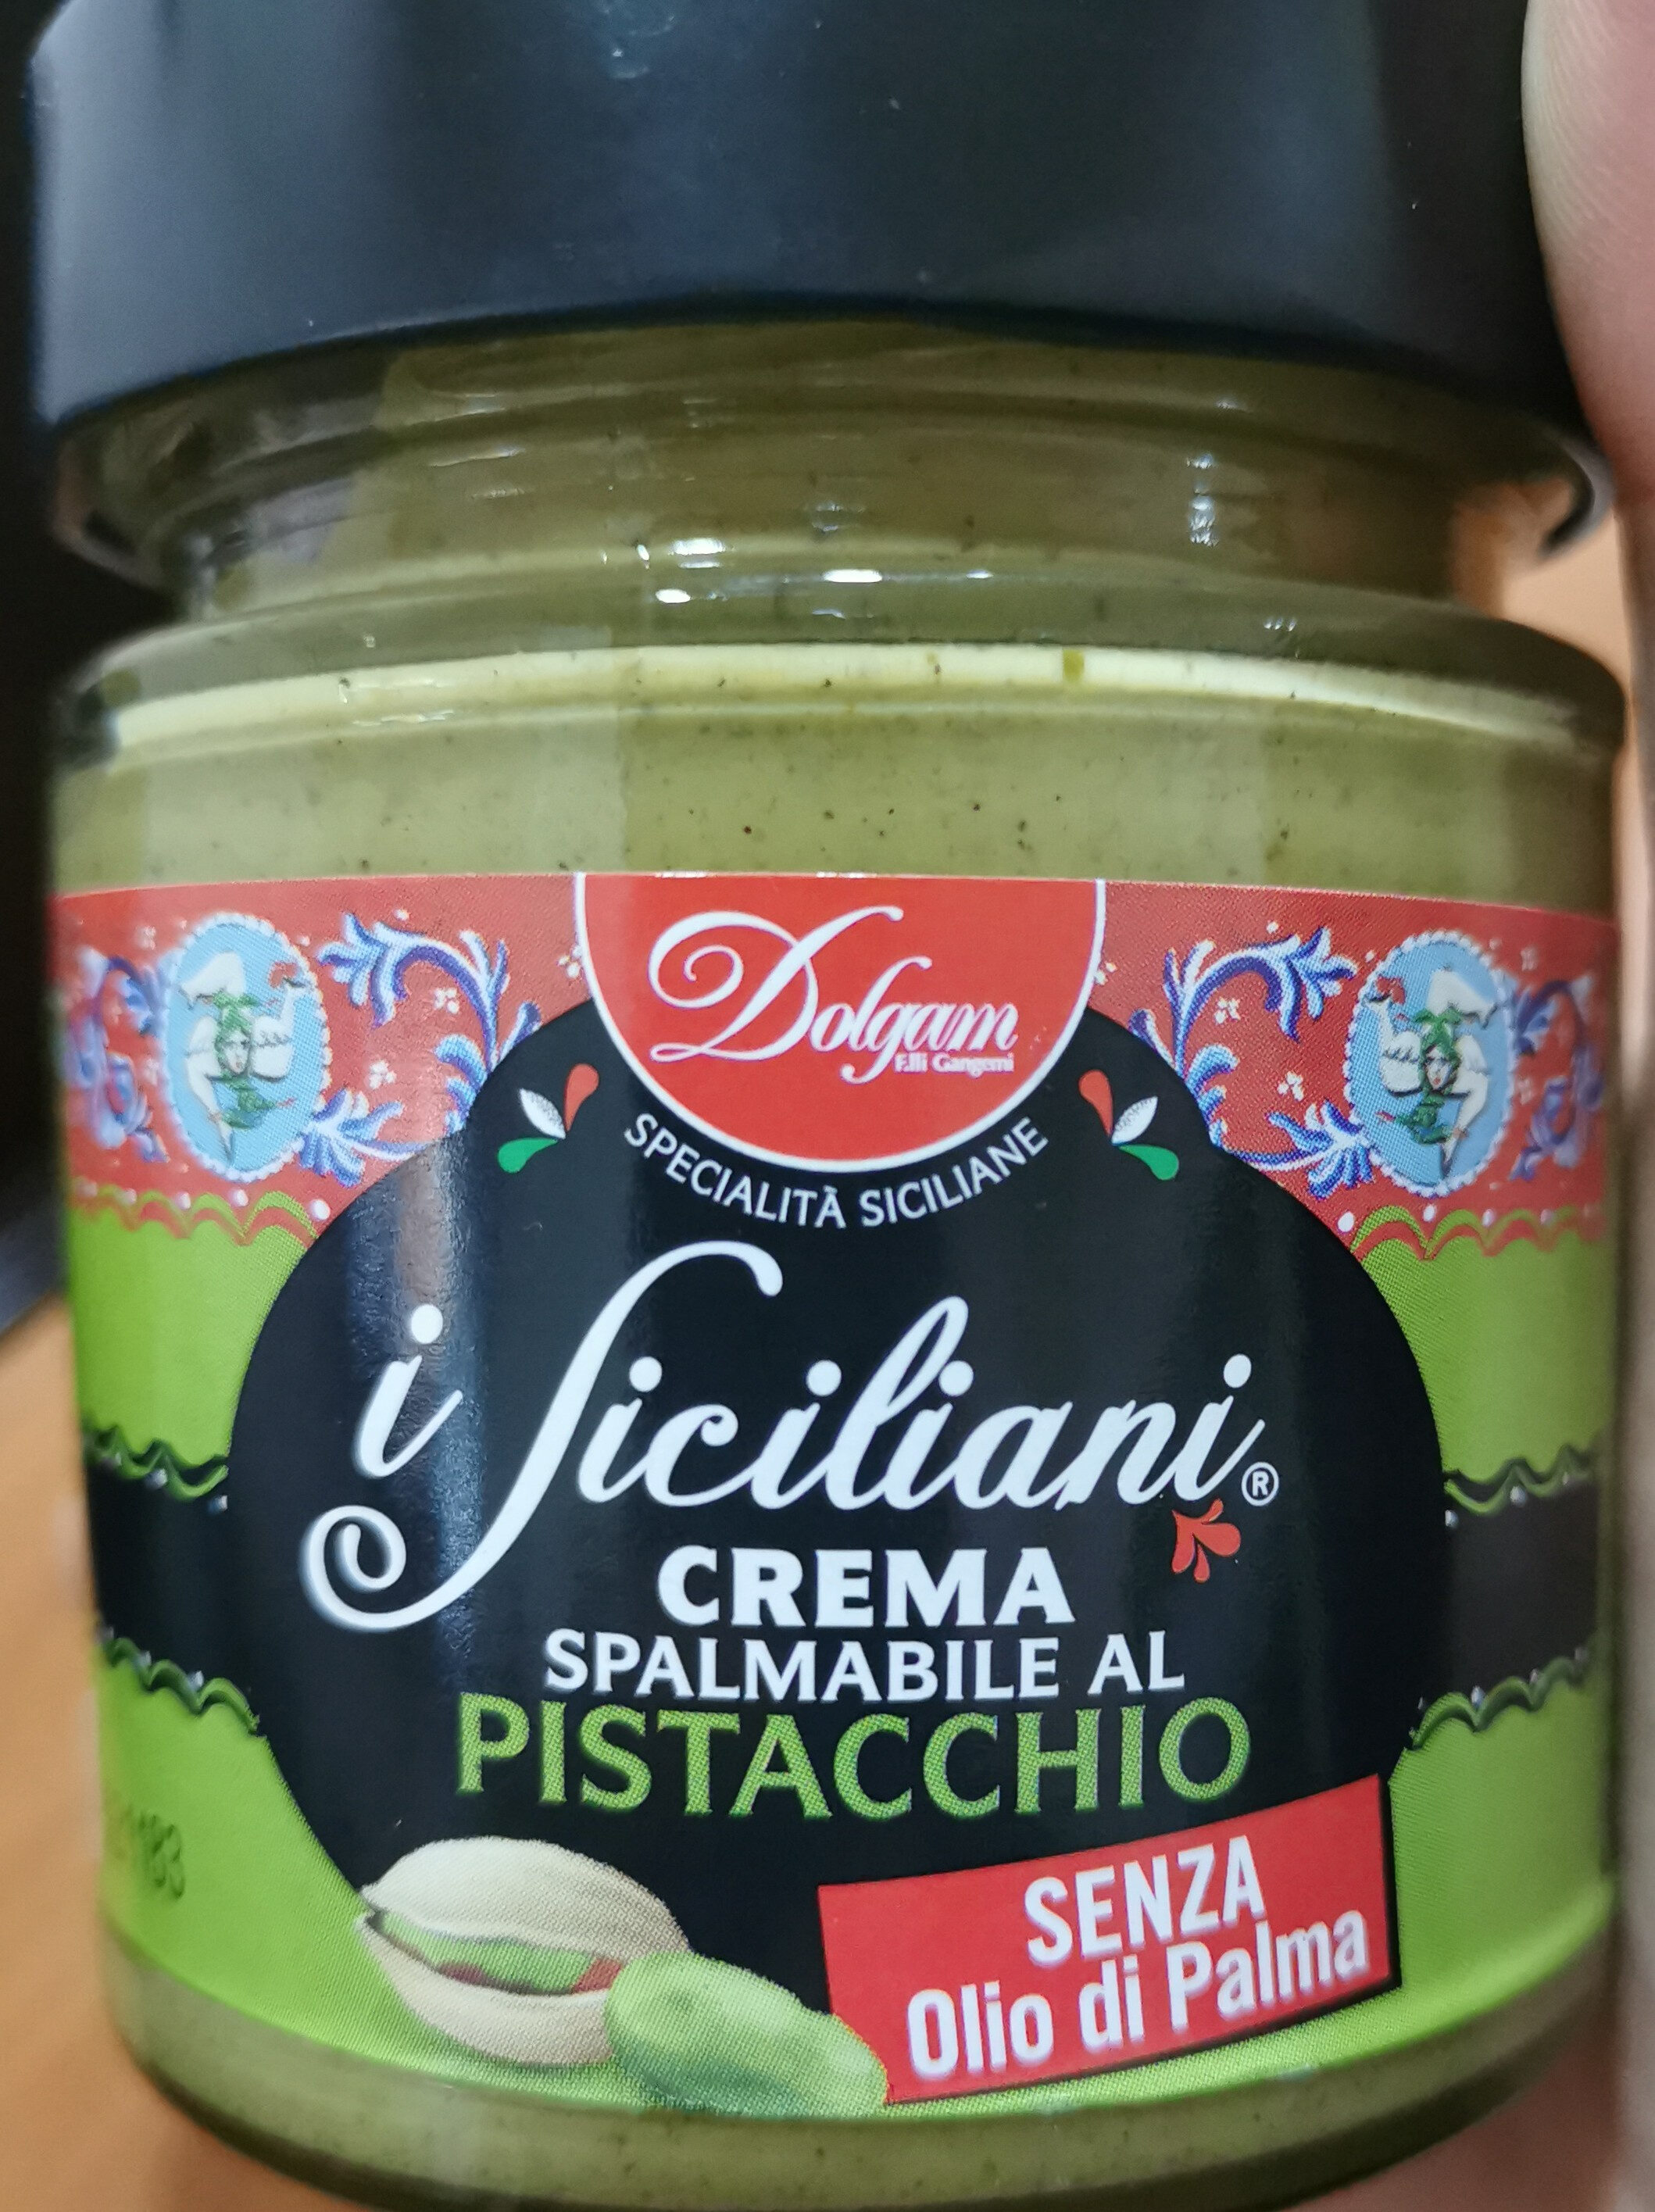 Crema spalmabile al pistacchio - Prodotto